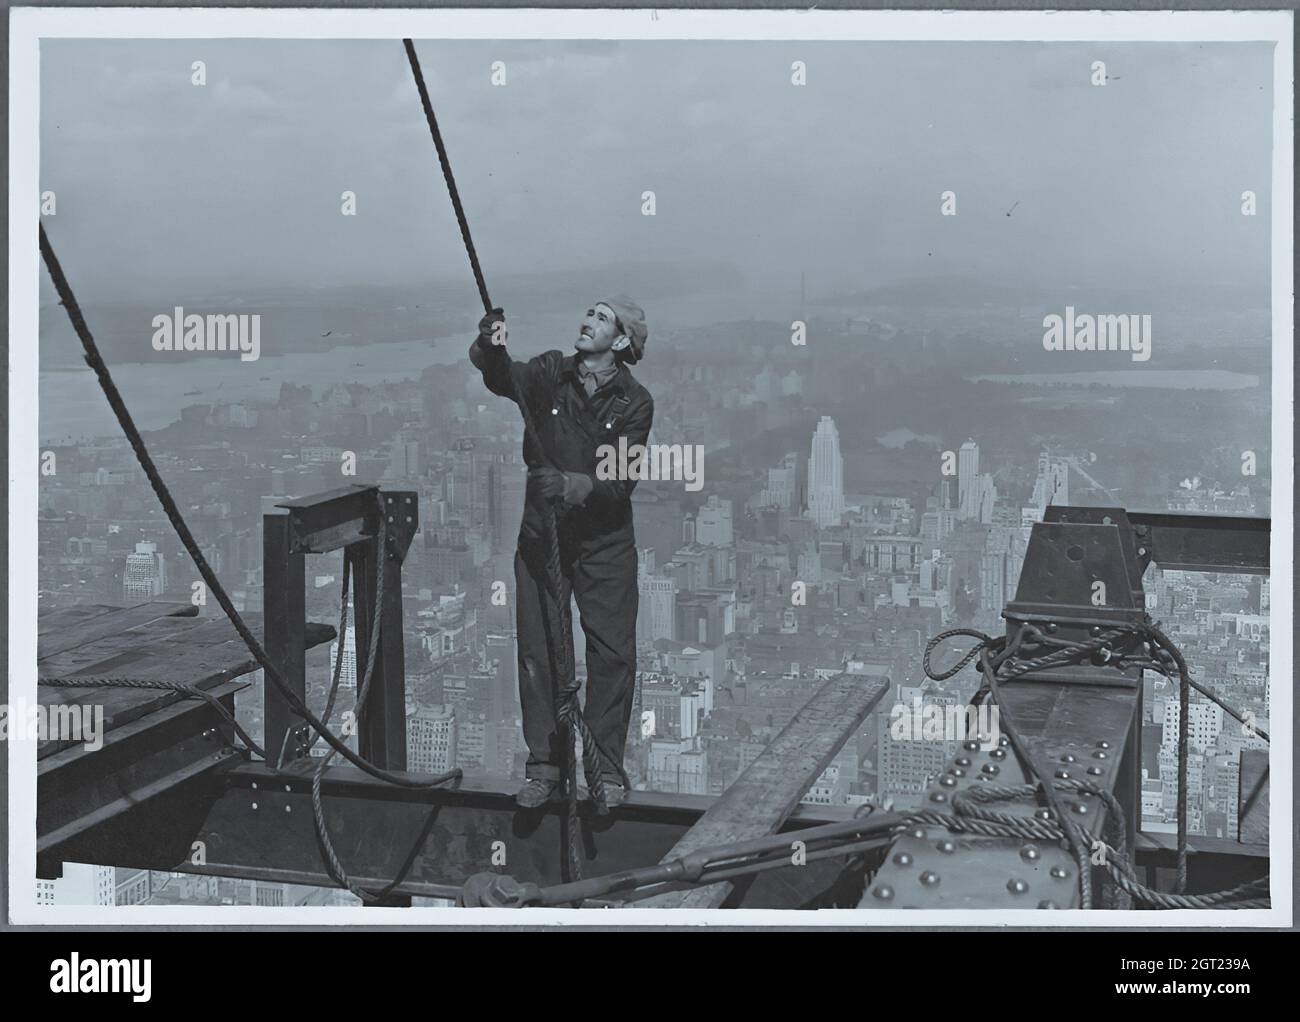 EMPIRE STATE BUILDING NY, NY 1930 - 1931. Vues générales et détaillées de l'Empire State Building en construction montrant les travailleurs qui effectuent diverses tâches, notamment le positionnement, le soudage et le rivetage de l'acier, les matériaux et fournitures de levage, ainsi que l'exploitation et la réparation de machines. Il y a aussi des vues panoramiques sur le centre-ville de Manhattan montrant d'autres bâtiments en construction. Photographies de : Hine, Lewis Wickes, 1874-1940 . Banque D'Images